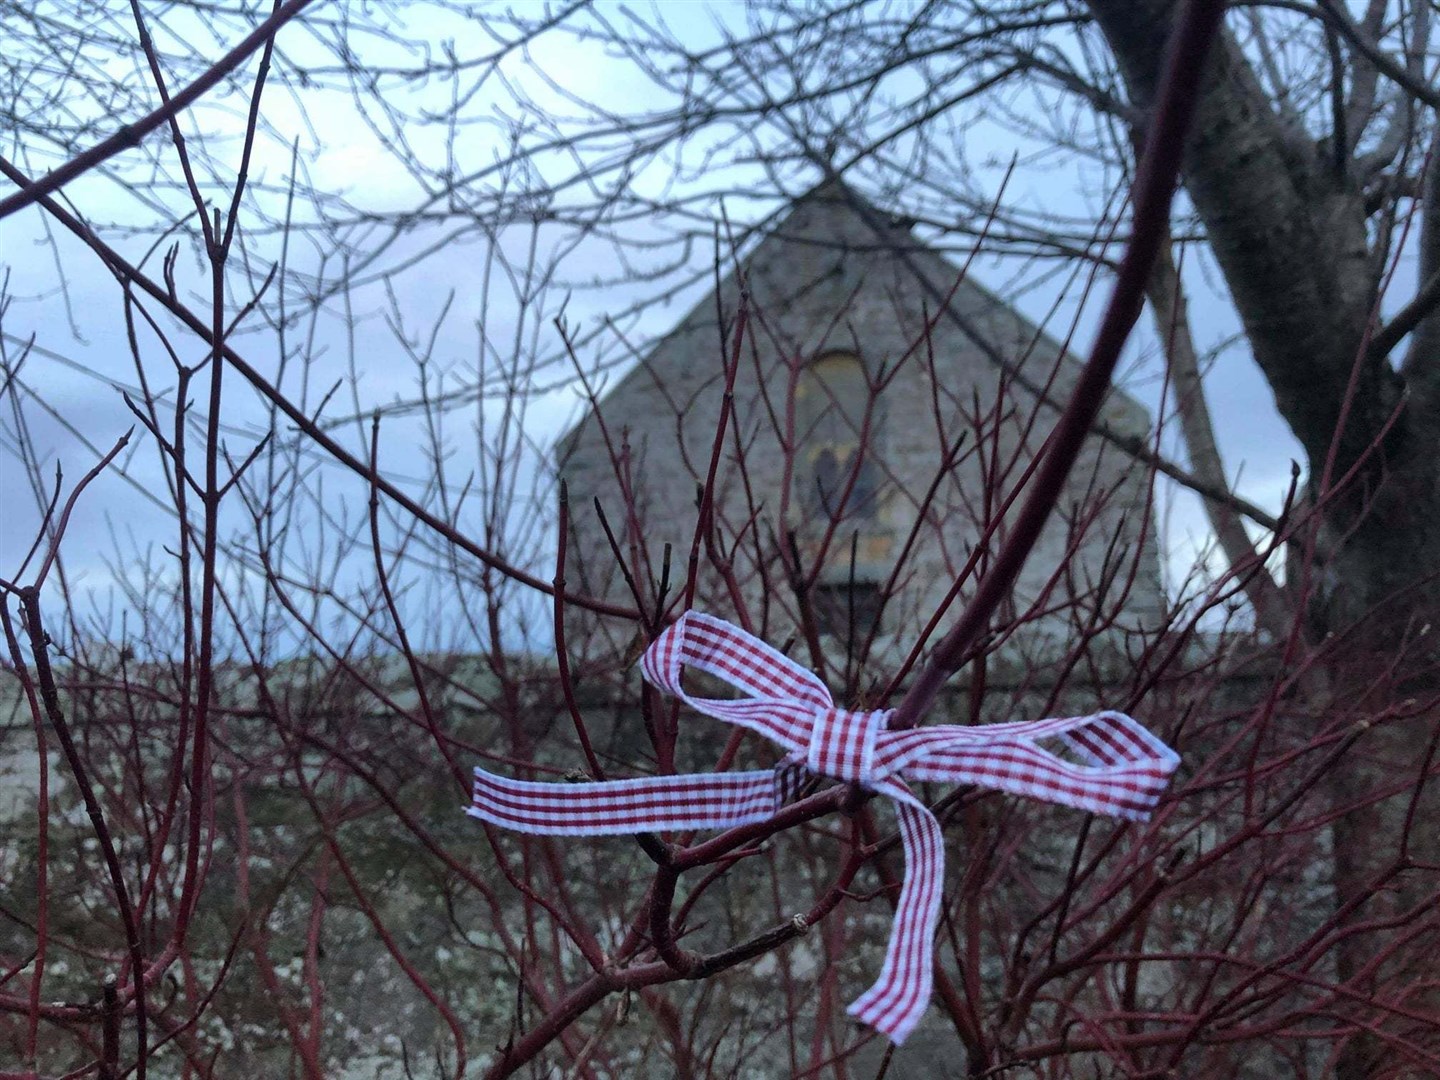 Kilmuir Easter Church is encouraging people to tie ribbons in the prayer corner.